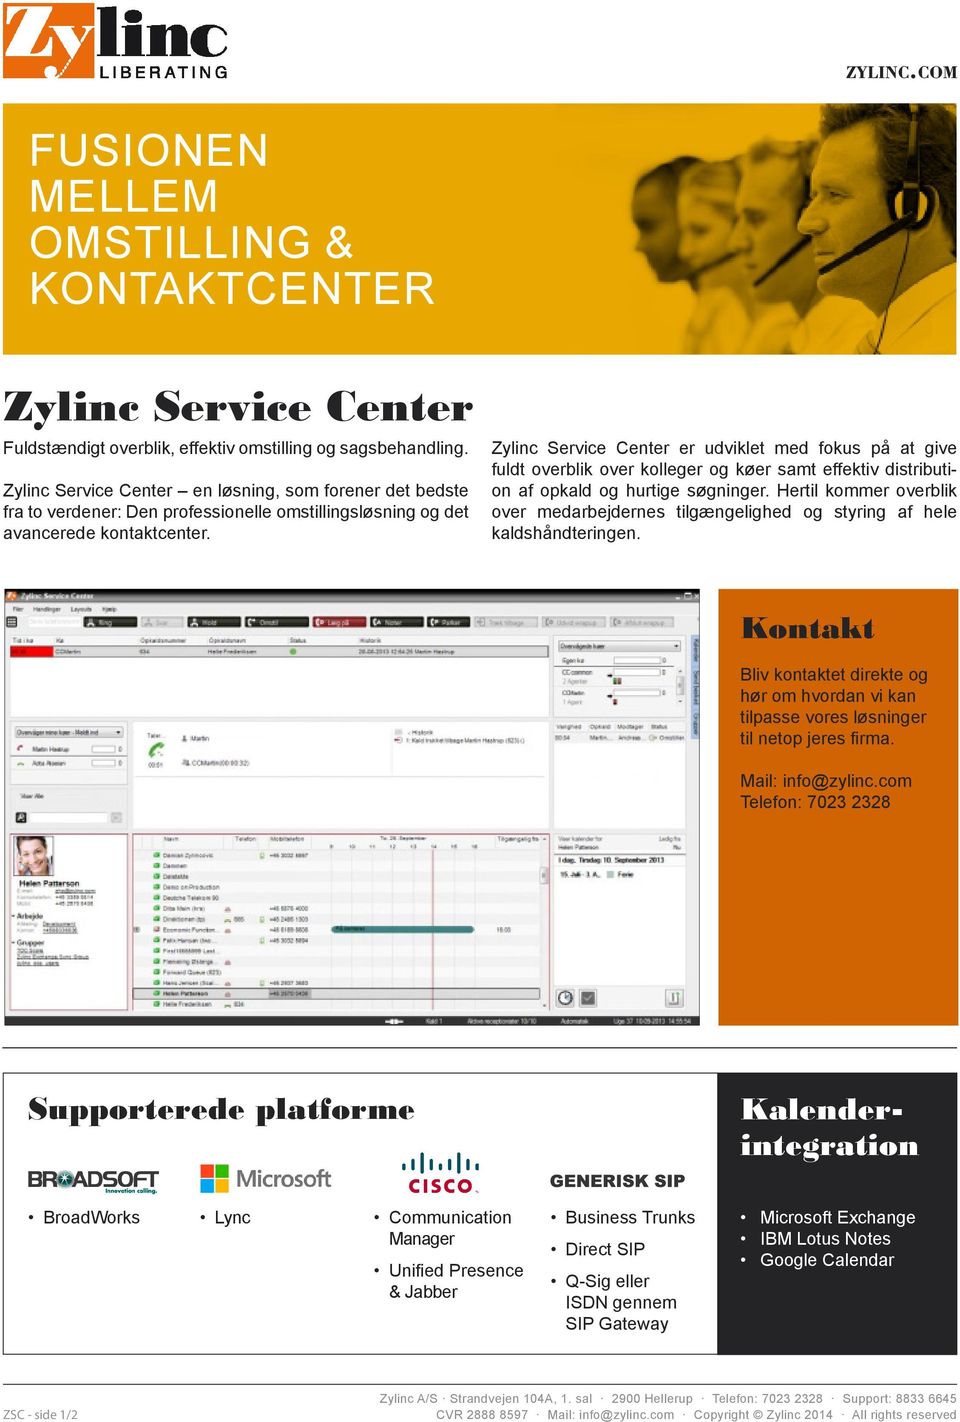 Zylinc Service Center er udviklet med fokus på at give fuldt overblik over kolleger og køer samt effektiv distribution af opkald og hurtige søgninger.